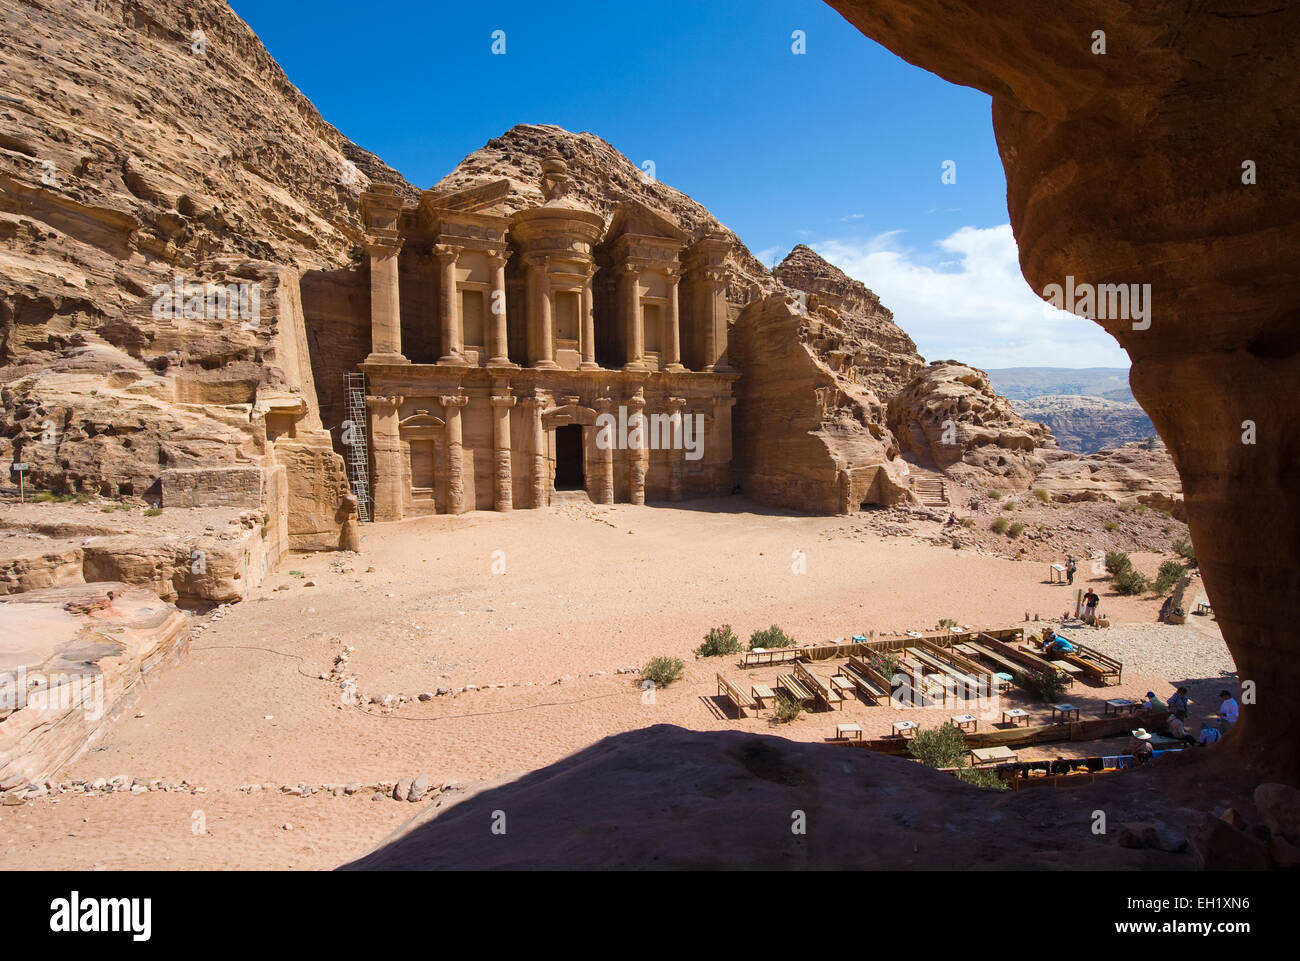 PETRA, JORDANIE - OCT 12, 2014 : les touristes peuvent s'asseoir et se détendre sur une terrasse en face de la 'Petite annonce' Deir monastère à Petra en Jordanie Banque D'Images